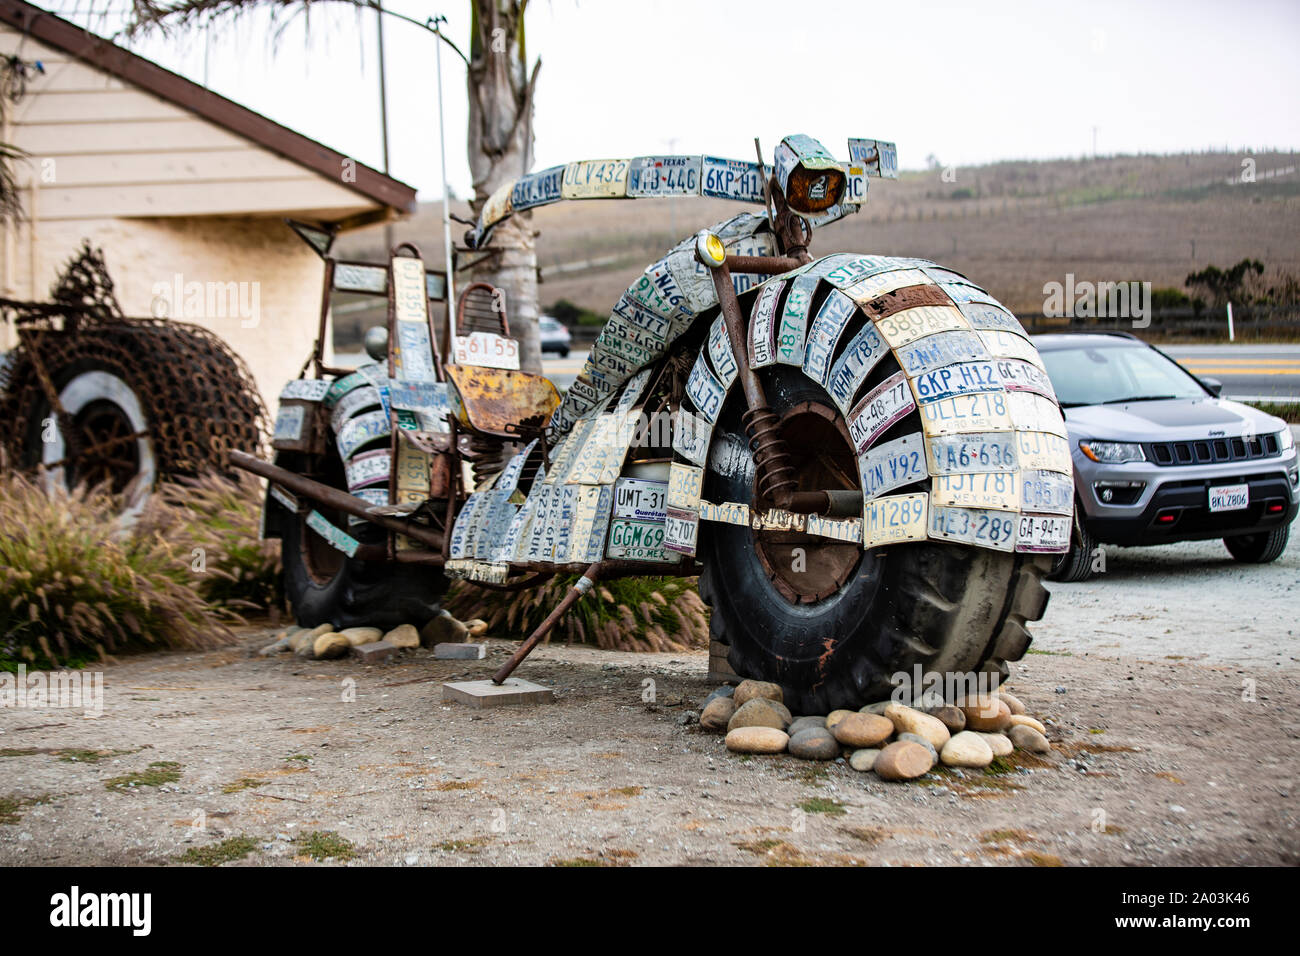 Ein überdimensionales Motorrad aus Nummernschildern hat sich ein Bastler aus Moss Landing in Kalifornien vor seine Tür gestellt. Das Riesenbike wirkt Stock Photo